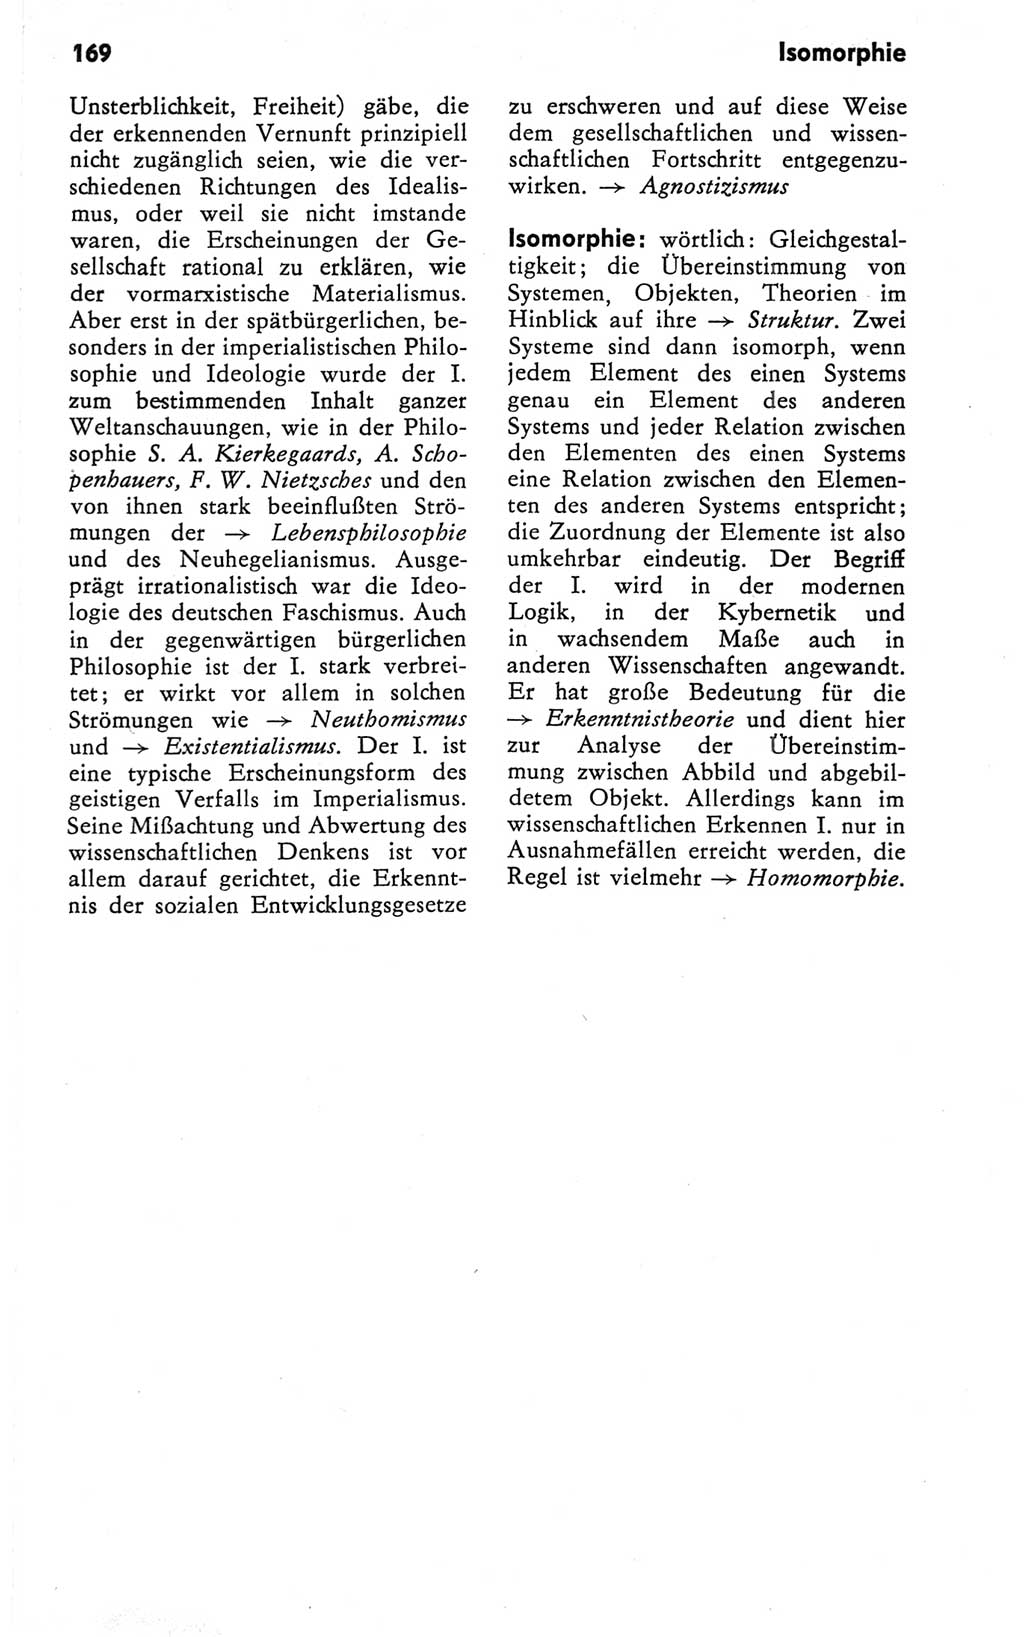 Kleines Wörterbuch der marxistisch-leninistischen Philosophie [Deutsche Demokratische Republik (DDR)] 1981, Seite 169 (Kl. Wb. ML Phil. DDR 1981, S. 169)